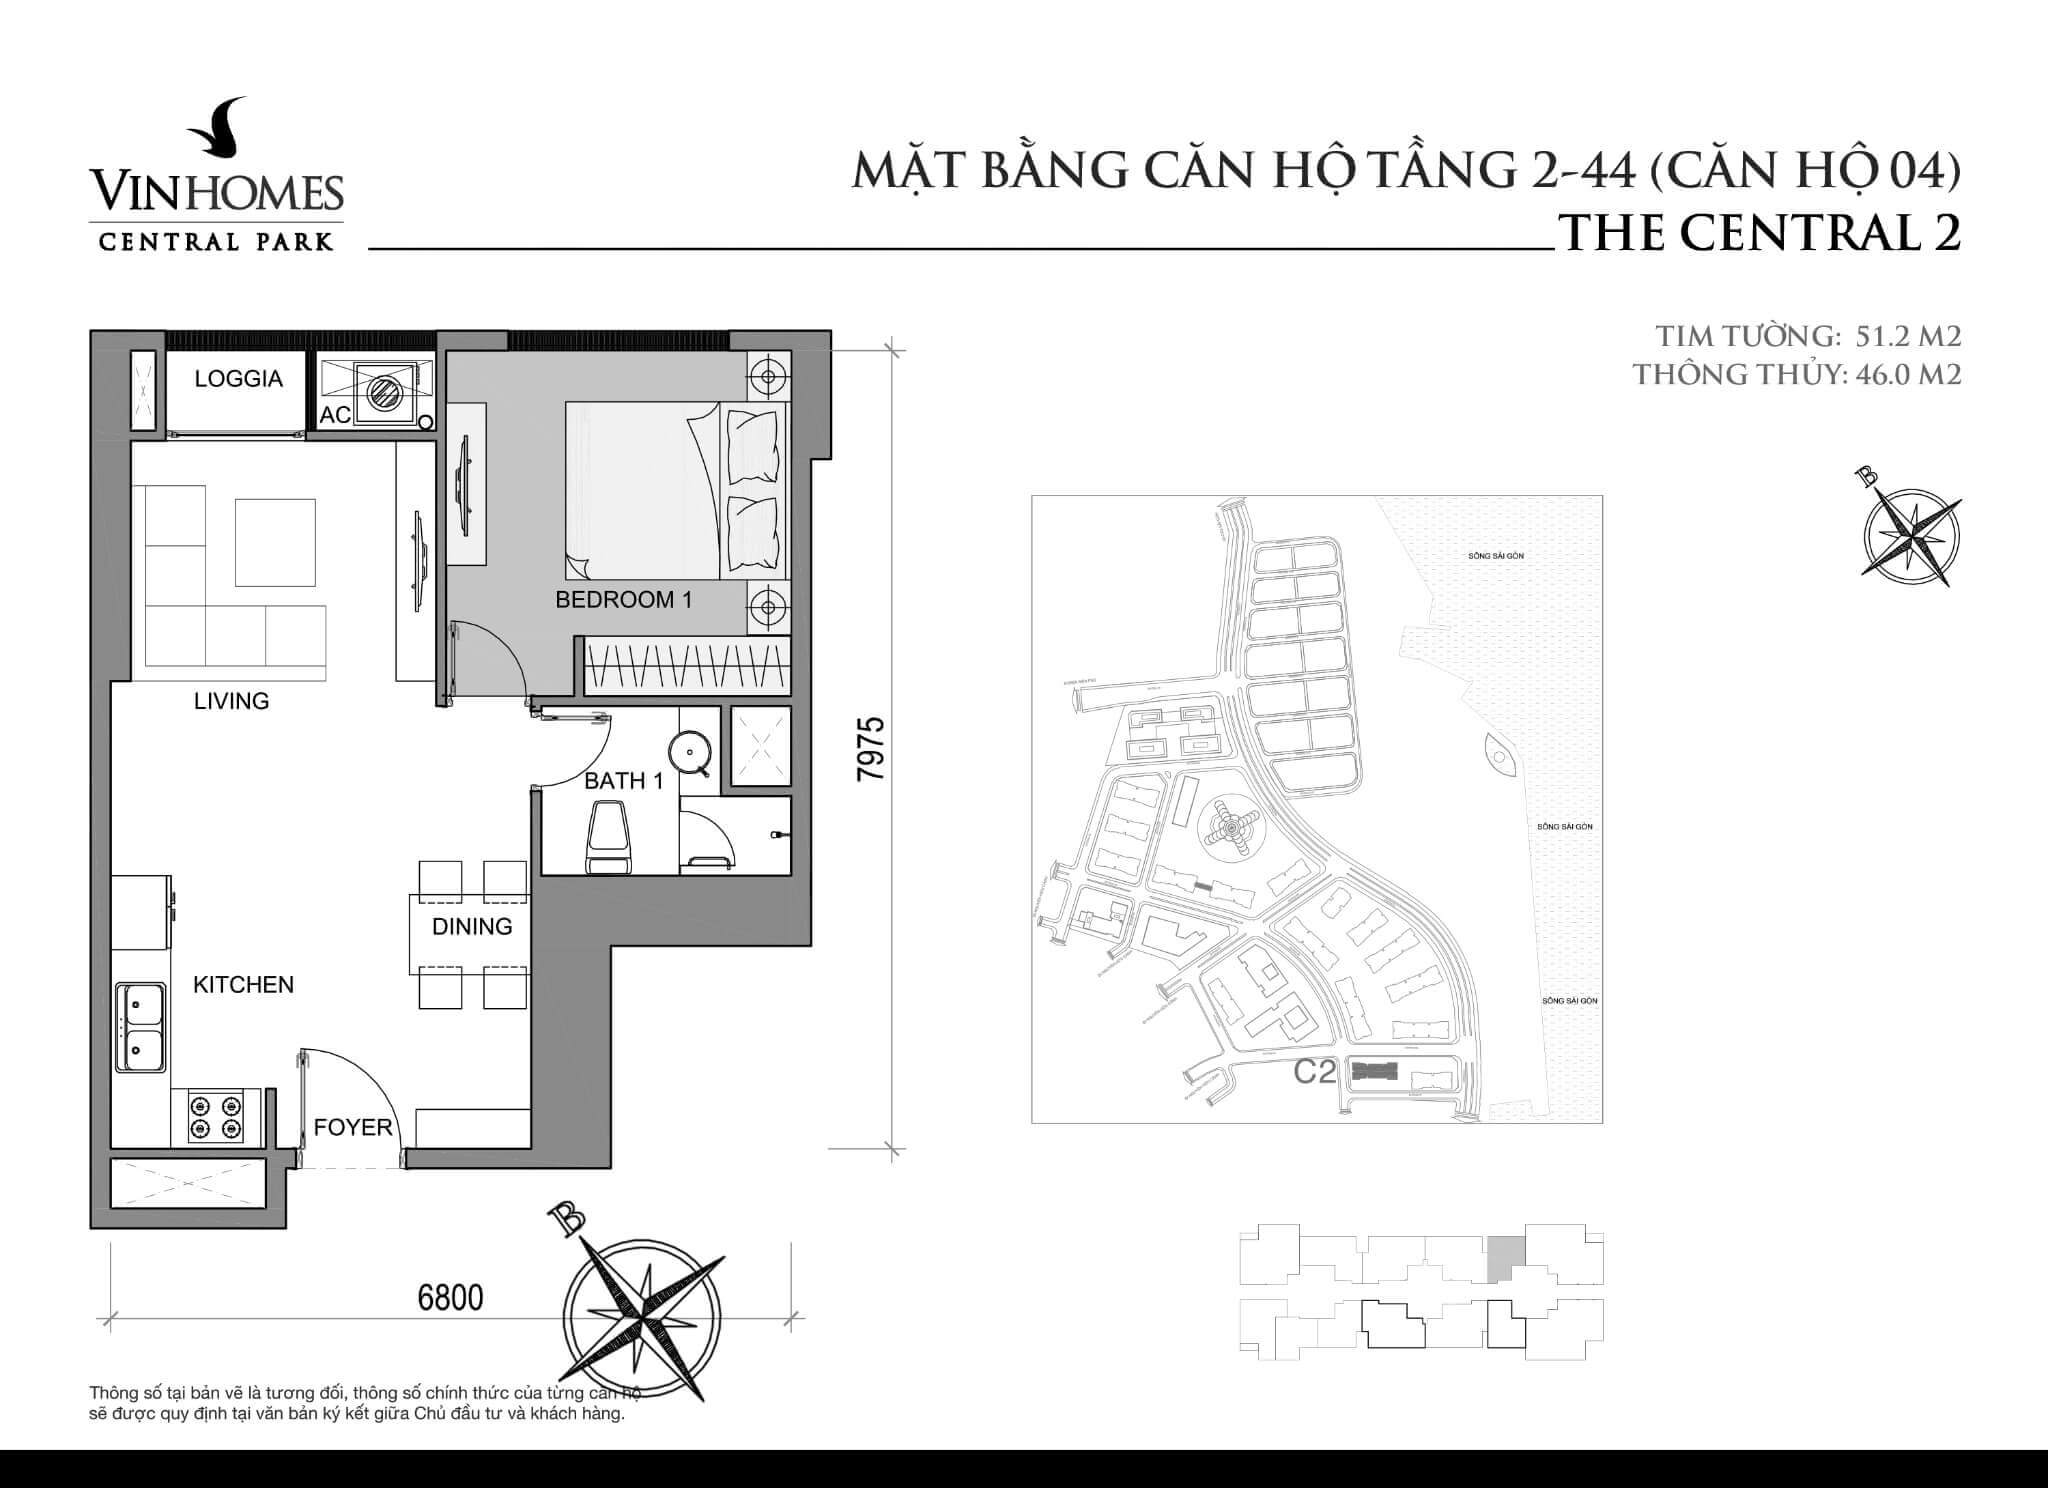 layout căn hộ số 4 tầng 2-44 Central 2